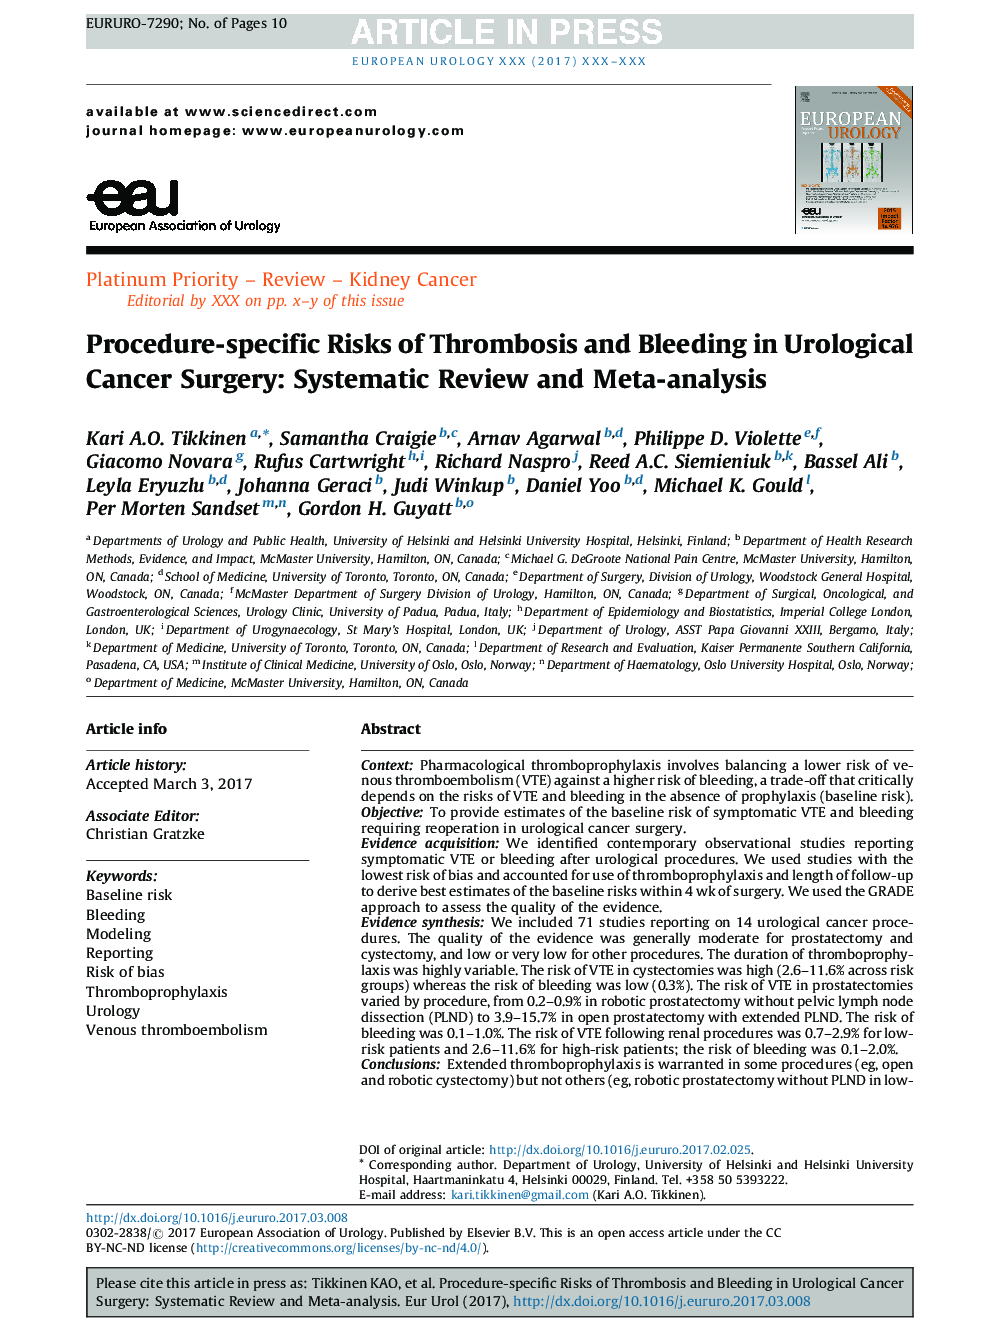 ریسک های خاص روش ترومبوز و خونریزی در جراحی سرطان ارولوژی: بررسی سیستماتیک و متاآنالیز 